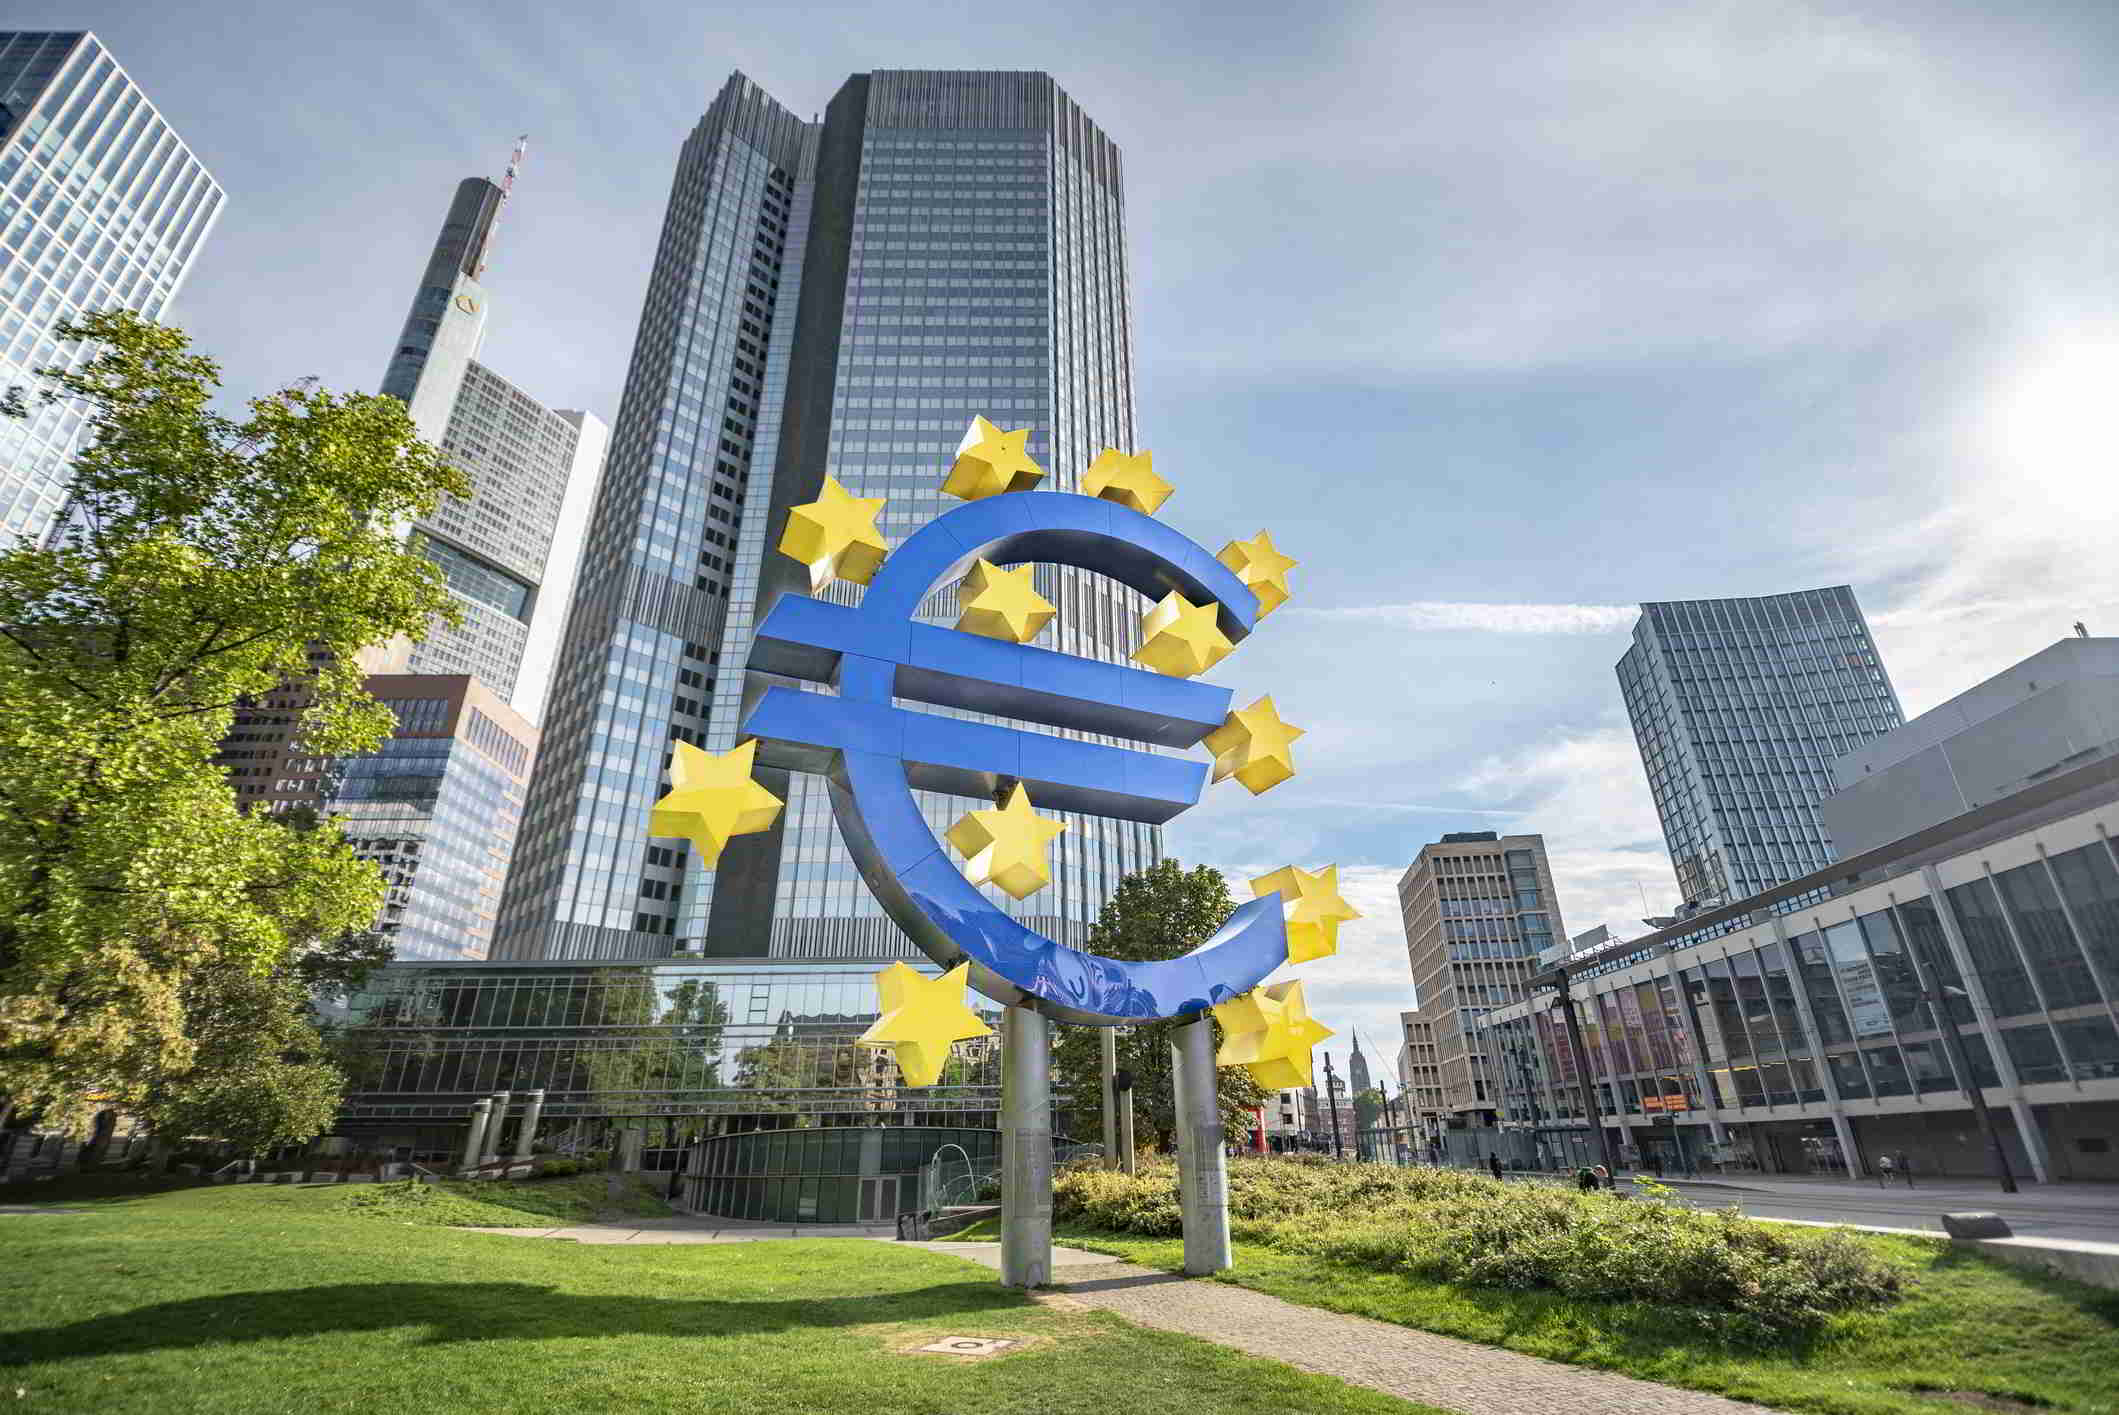 Evitaron una crisis de liquidez y han ayudado a empresas y hogares con dinero barato del BCE en medio del Covid-19, pero afrontan un 2021 con incertidumbres derivadas de los créditos morosos o las dificultades para repartir dividendos a sus accionistas